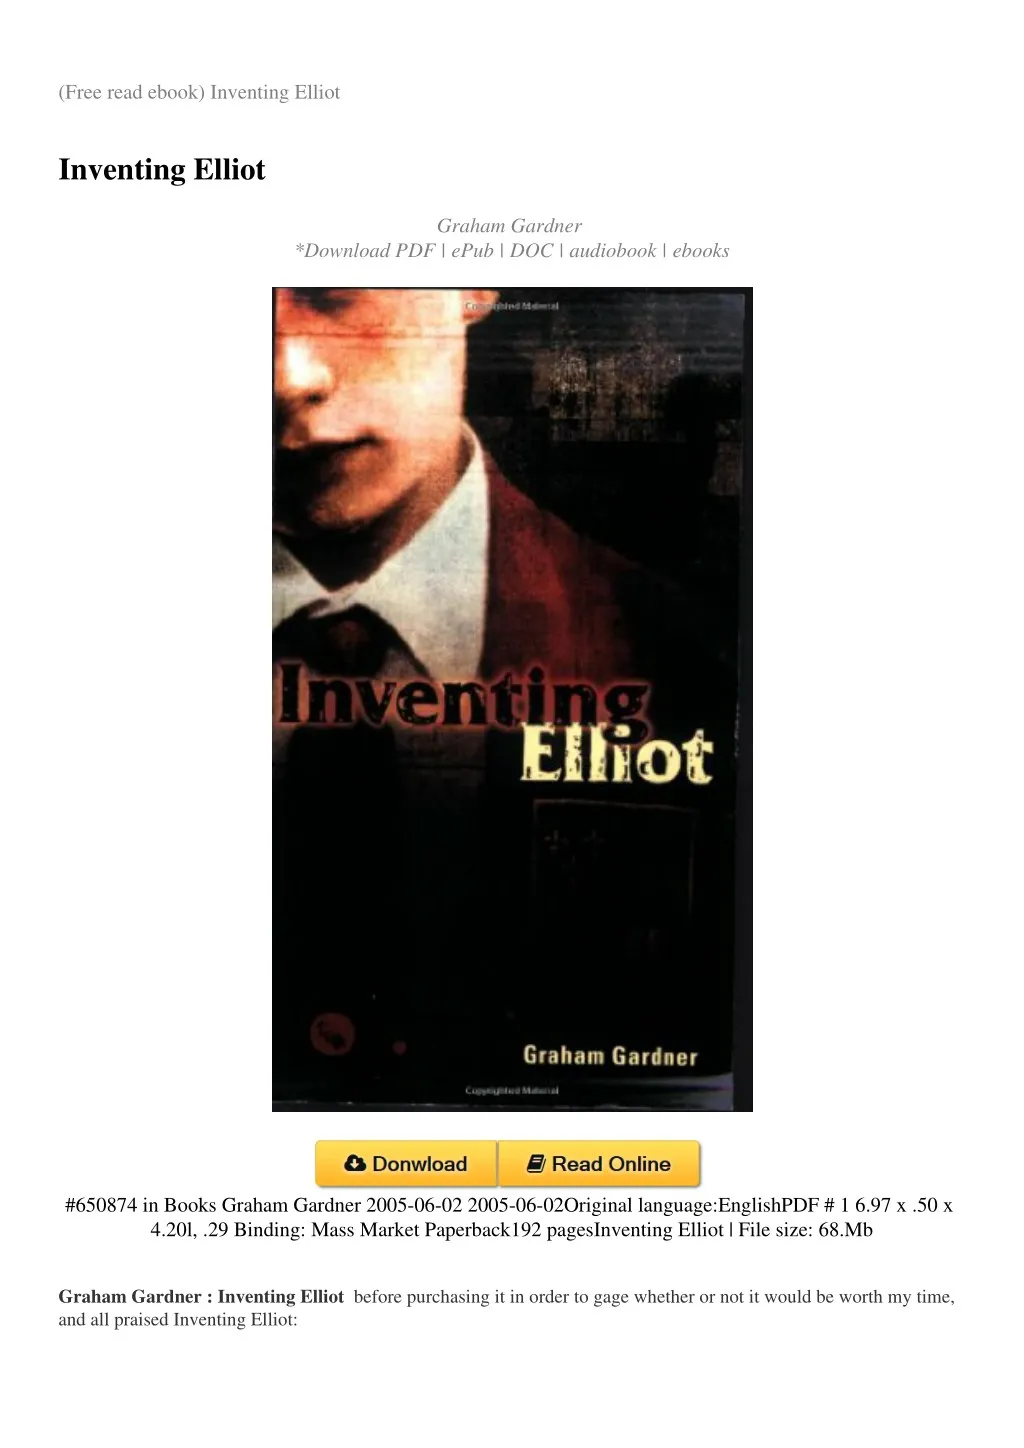 free read ebook inventing elliot